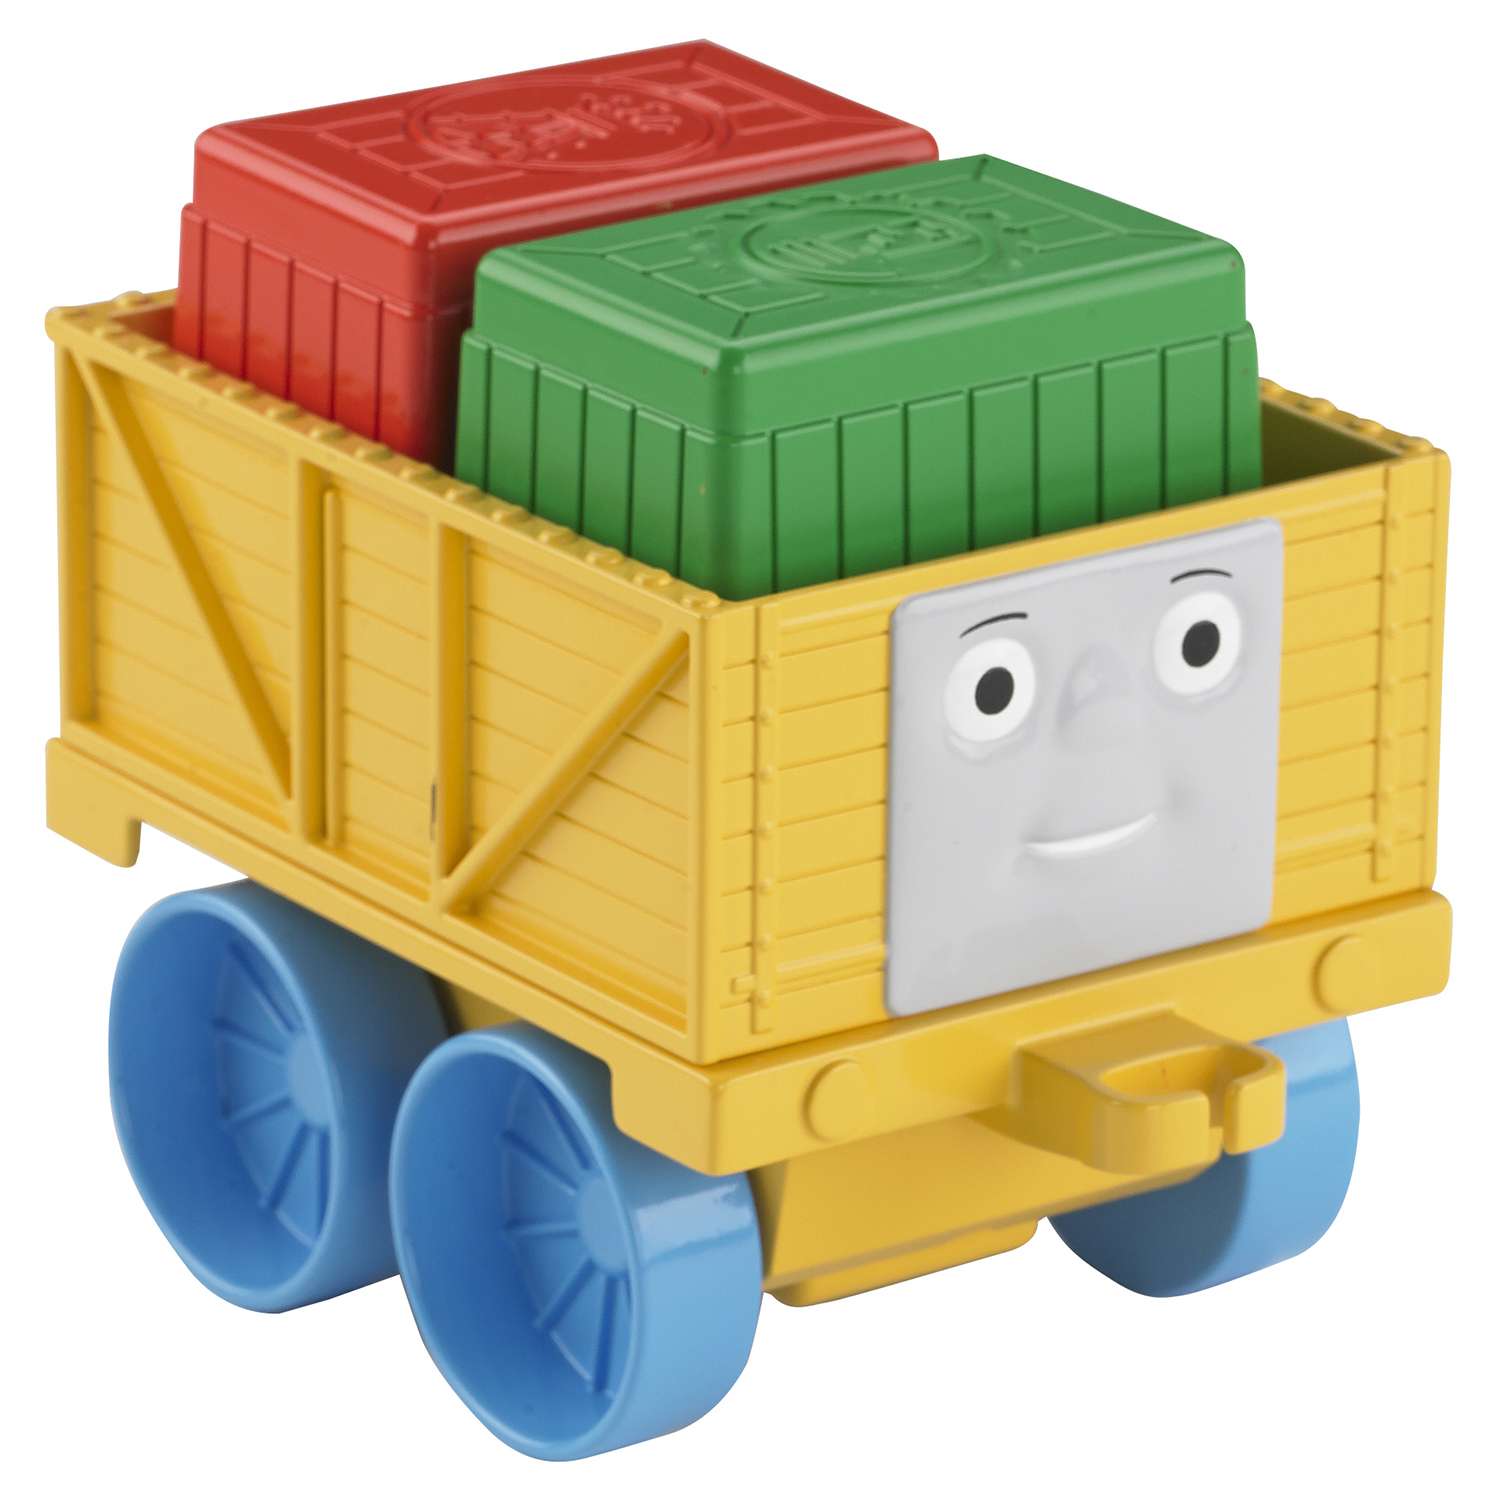 Игровой набор Thomas & Friends Первый паровозик малыша в ассортименте - фото 5